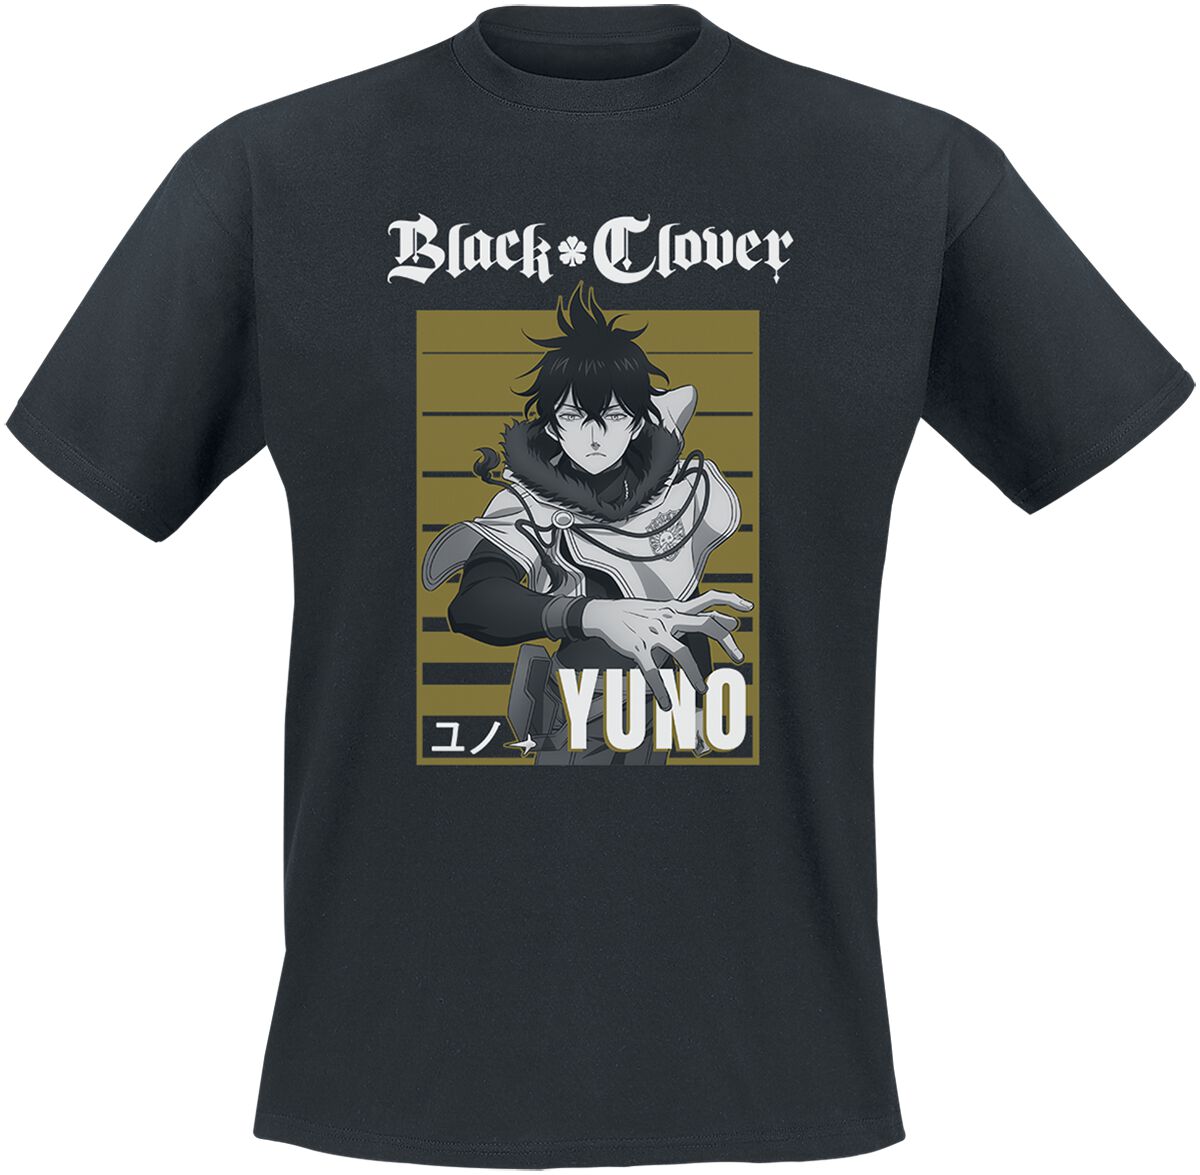 Black Clover - Anime T-Shirt - Yuno - S bis XL - für Männer - Größe S - schwarz  - Lizenzierter Fanartikel